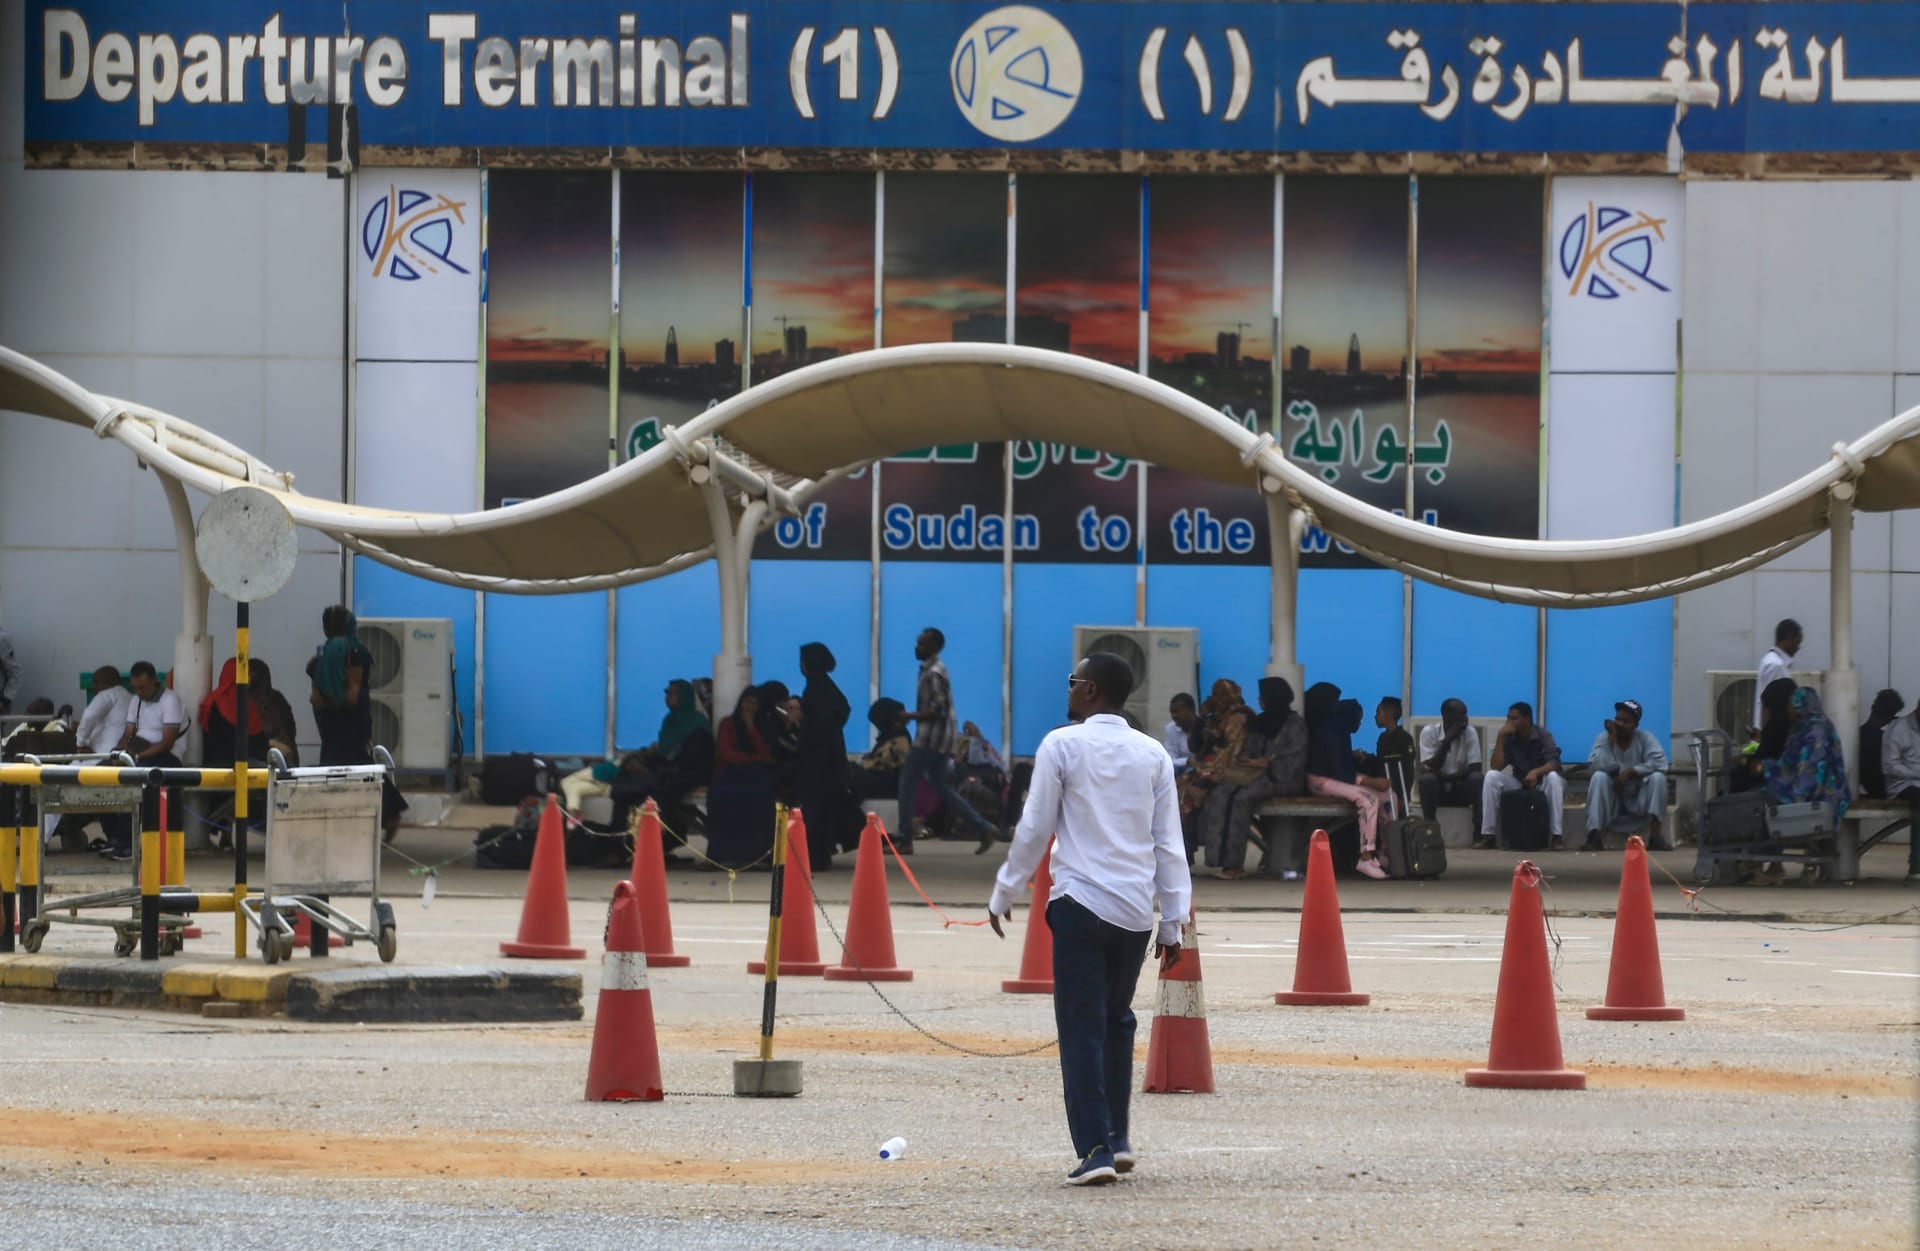 السودان ينفي هبوط طائرة إسرائيلية في مطار الخرطوم ويؤكد: "تركية"